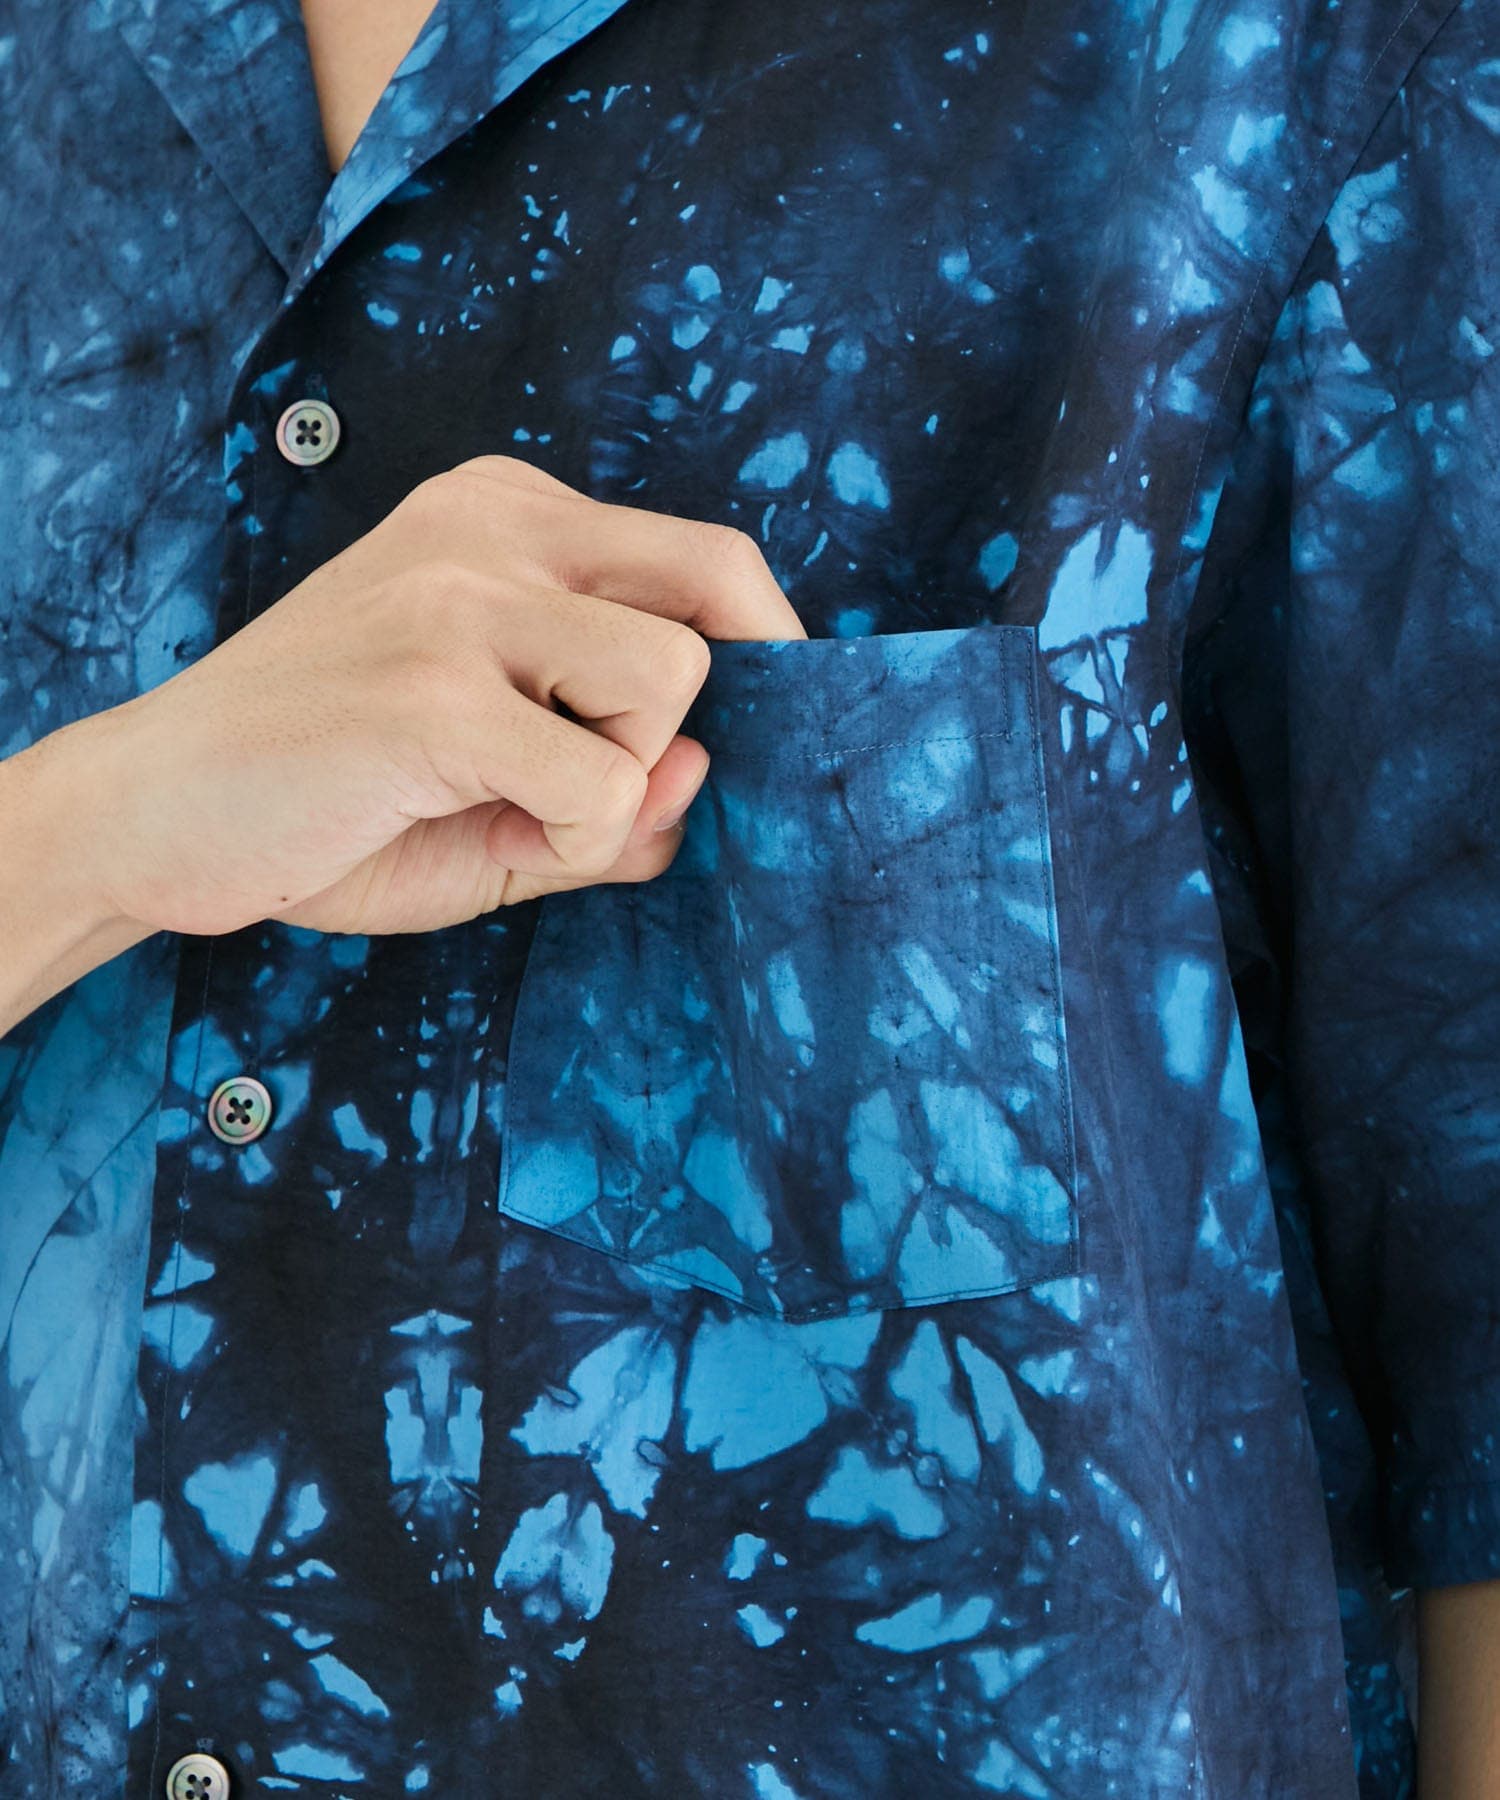 Kago Dyed Open Callor S/S Shirt ALLEGE